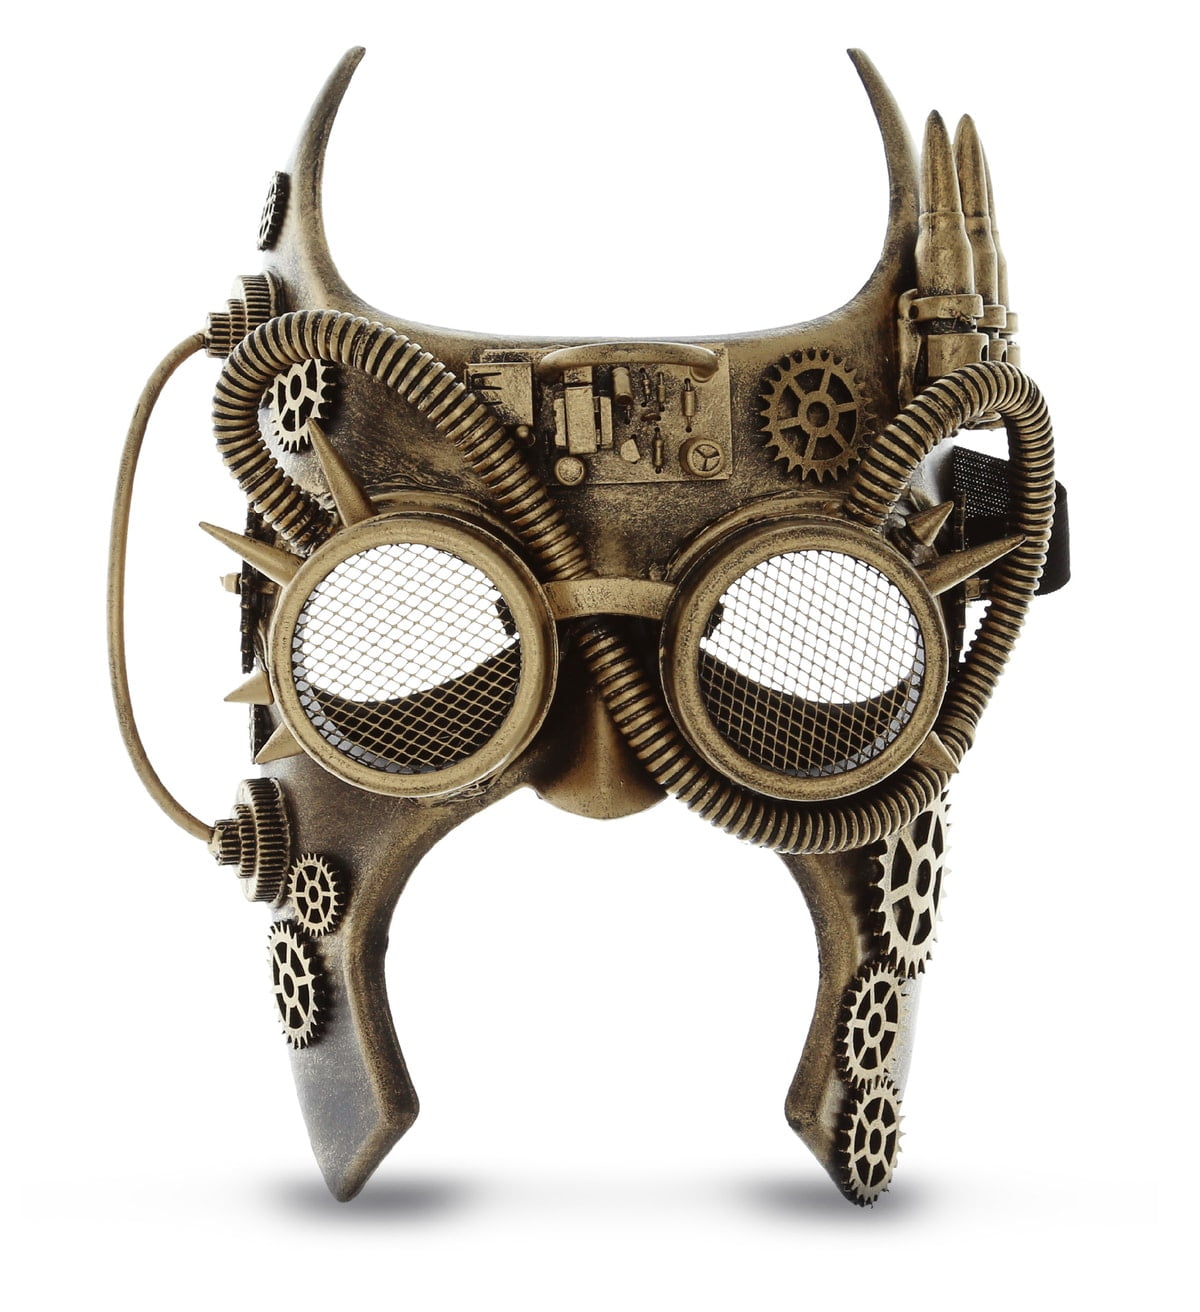 Attitude Studio Pink Skeleton Mask - Costume Skull Mask for Men